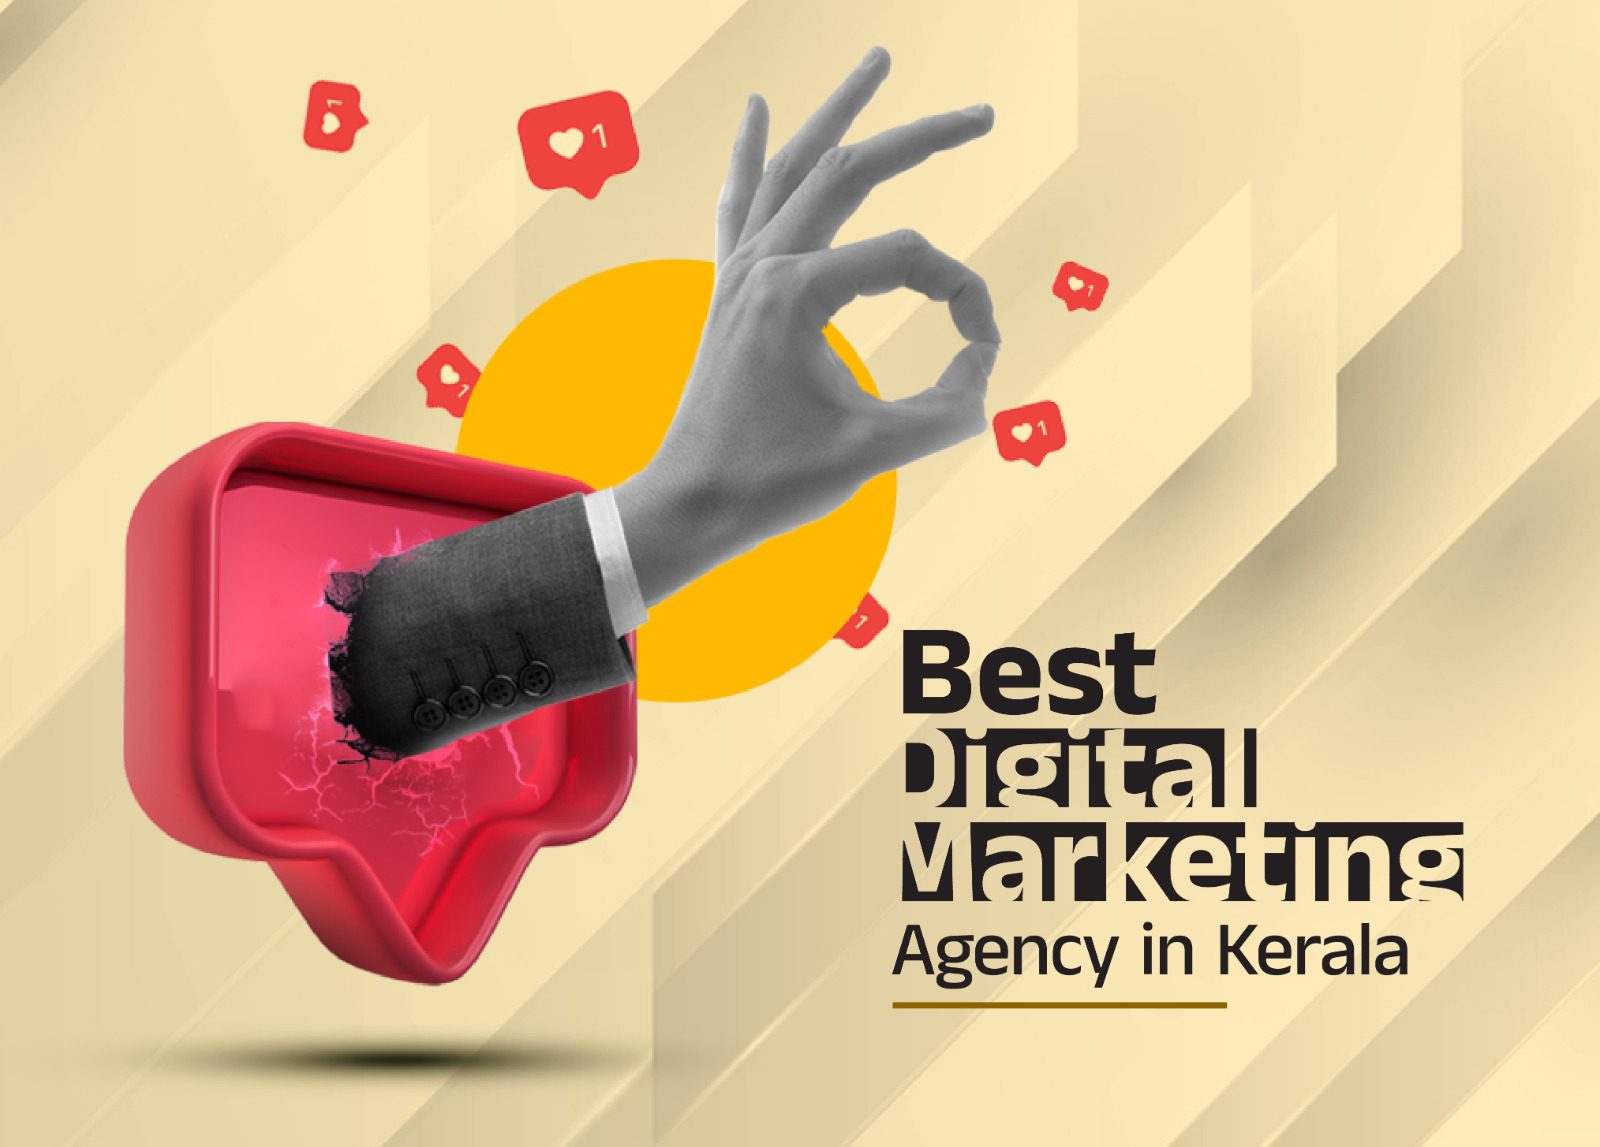 The Best Digital Marketing Agency in Kerala